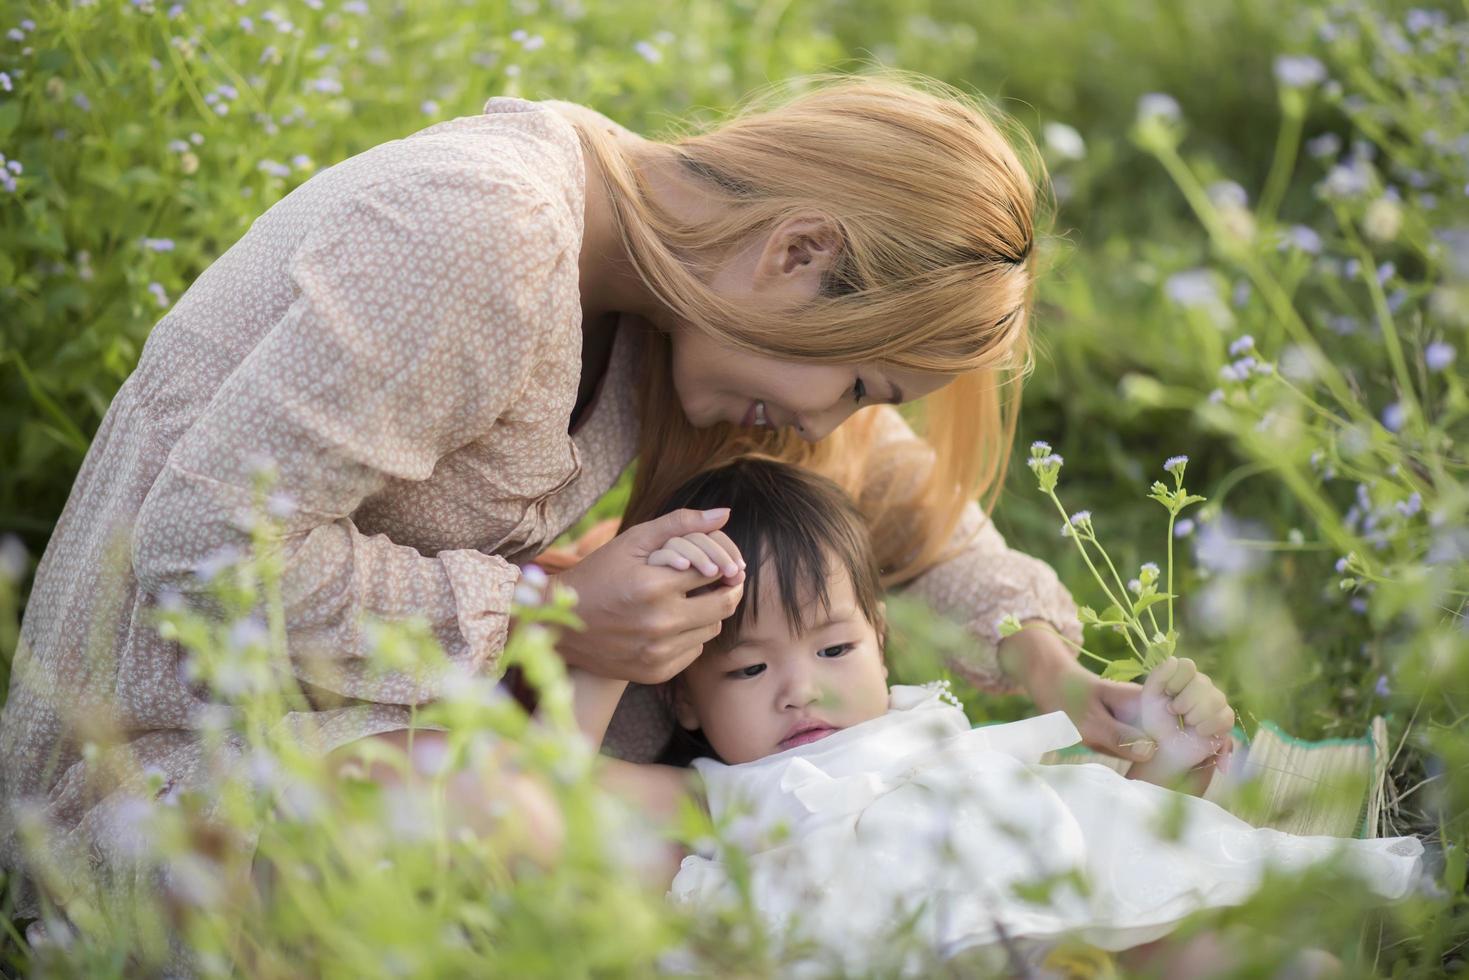 madre e hija jugando juntos en un prado foto